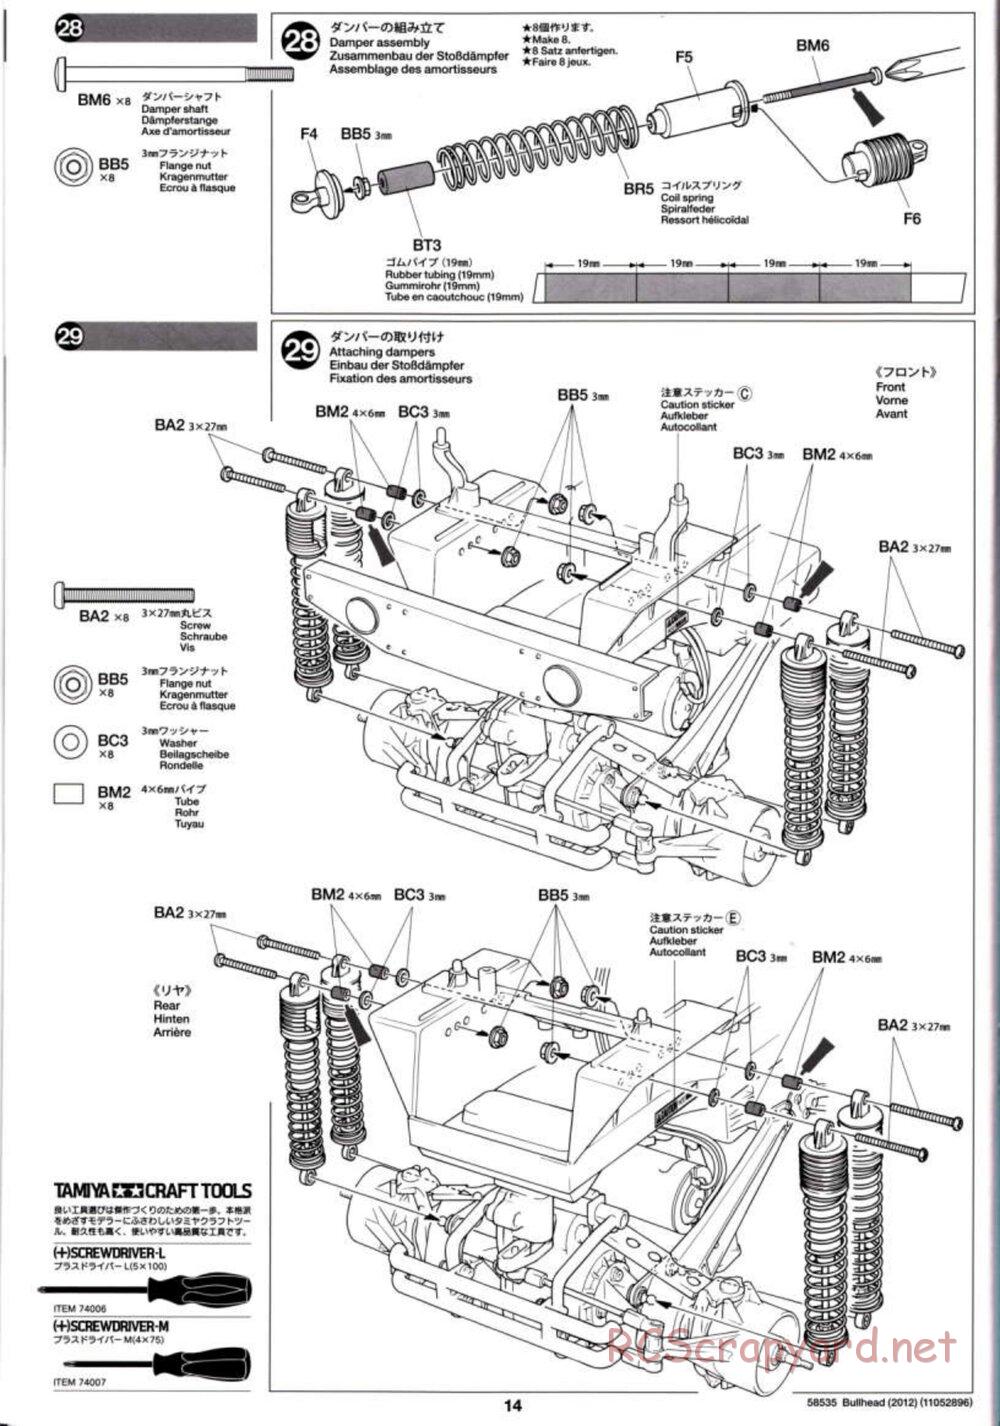 Tamiya - Bullhead 2012 - CB Chassis - Manual - Page 14